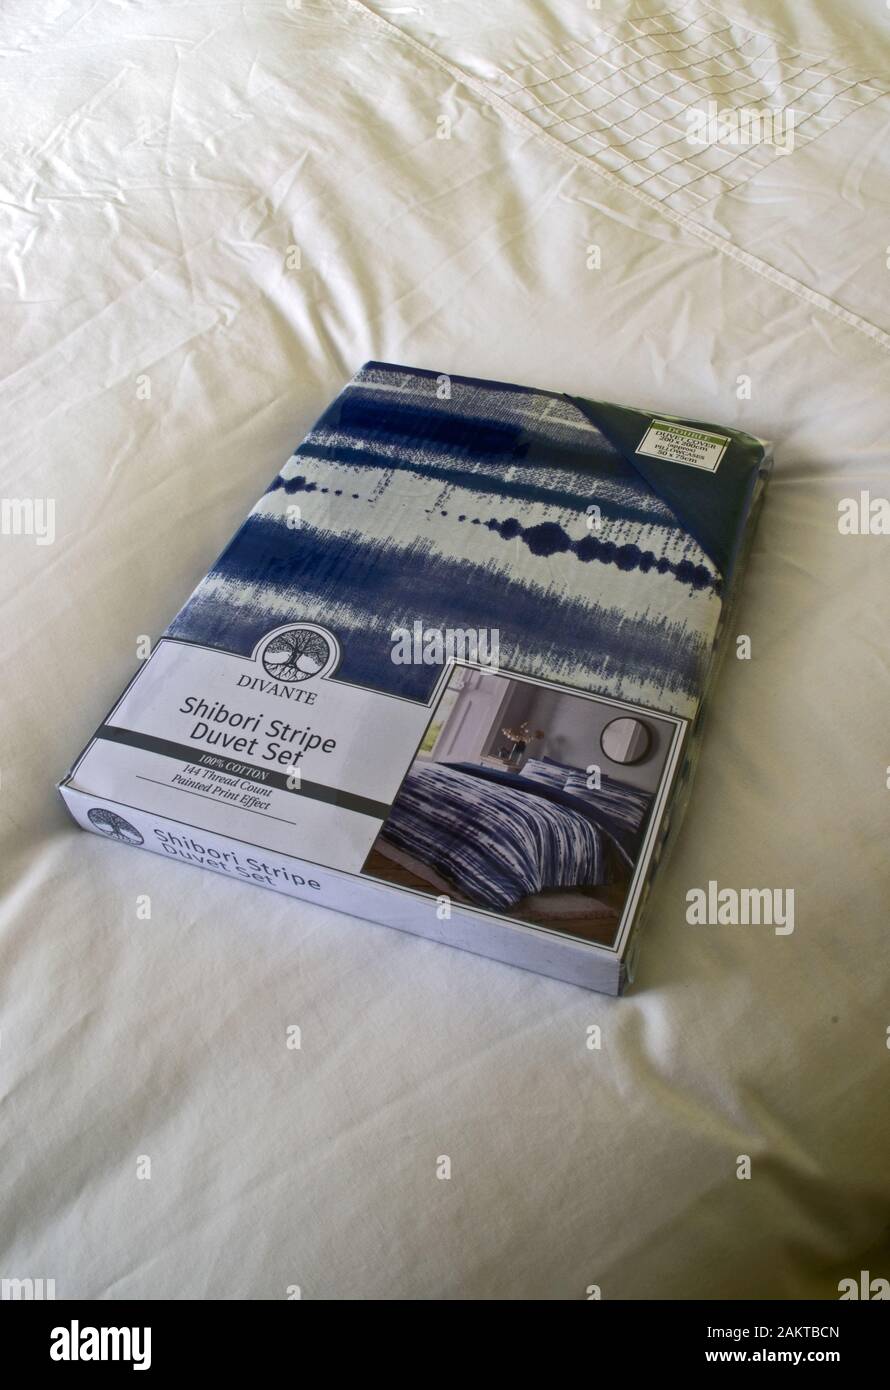 Divante Shibori striscia 100% cotone piumino Set biancheria da letto su un letto Foto Stock